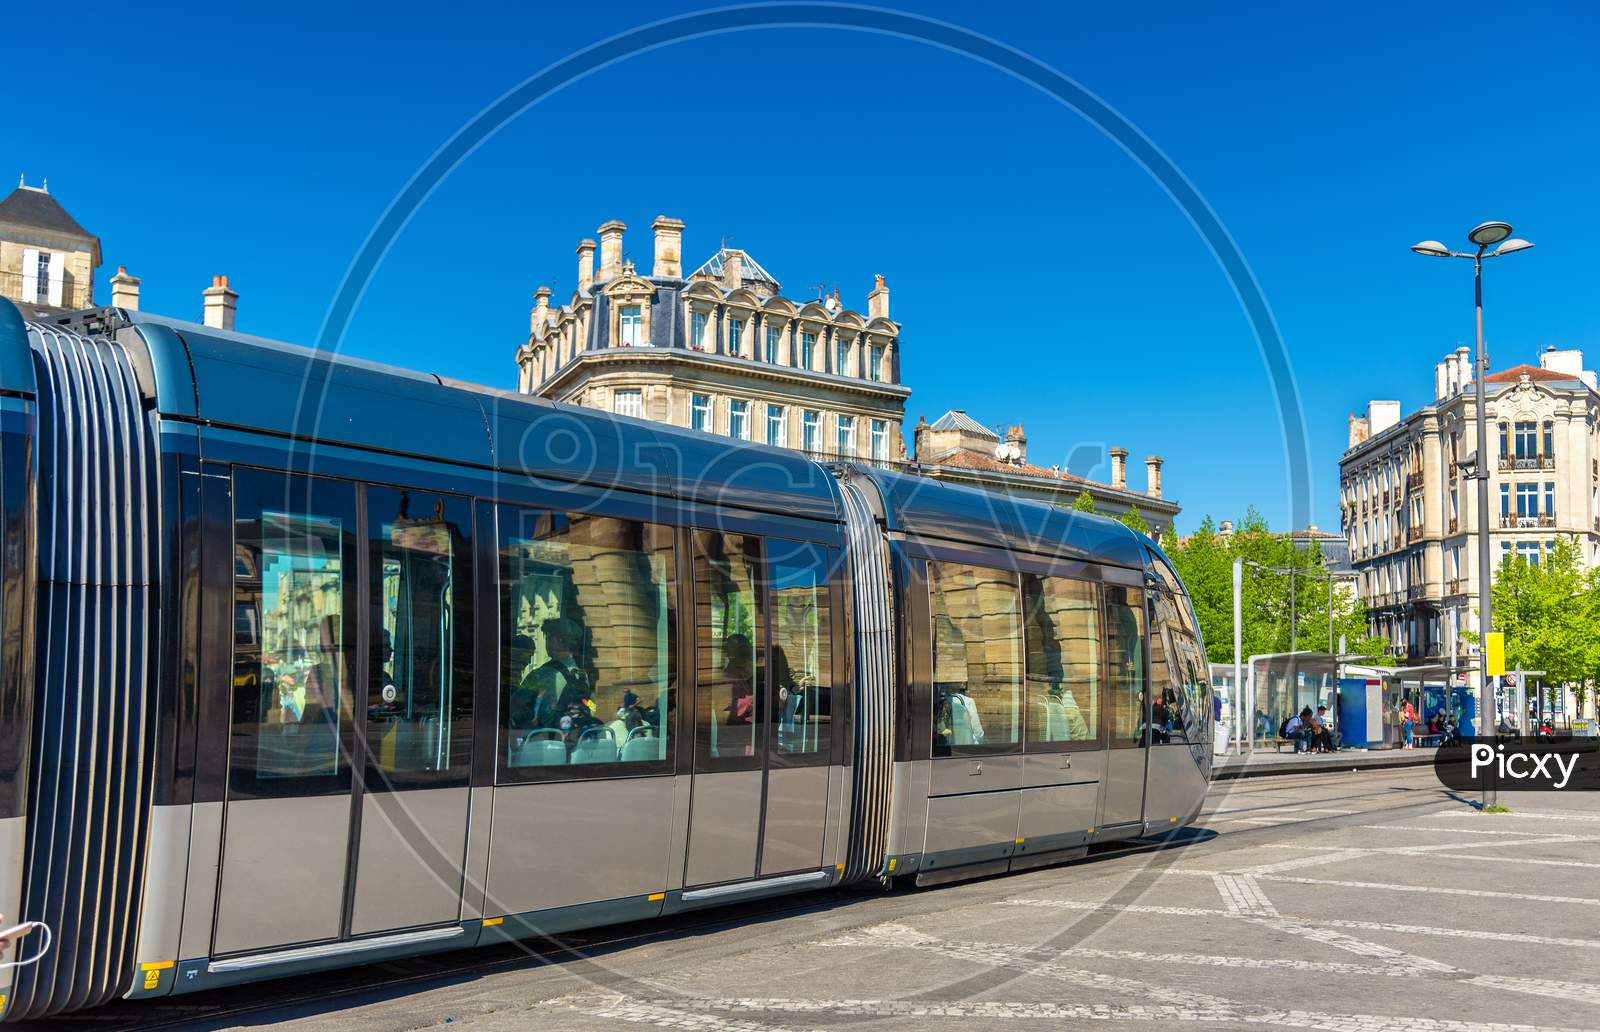 City Tram On Place De La Victoire In Bordeaux, France